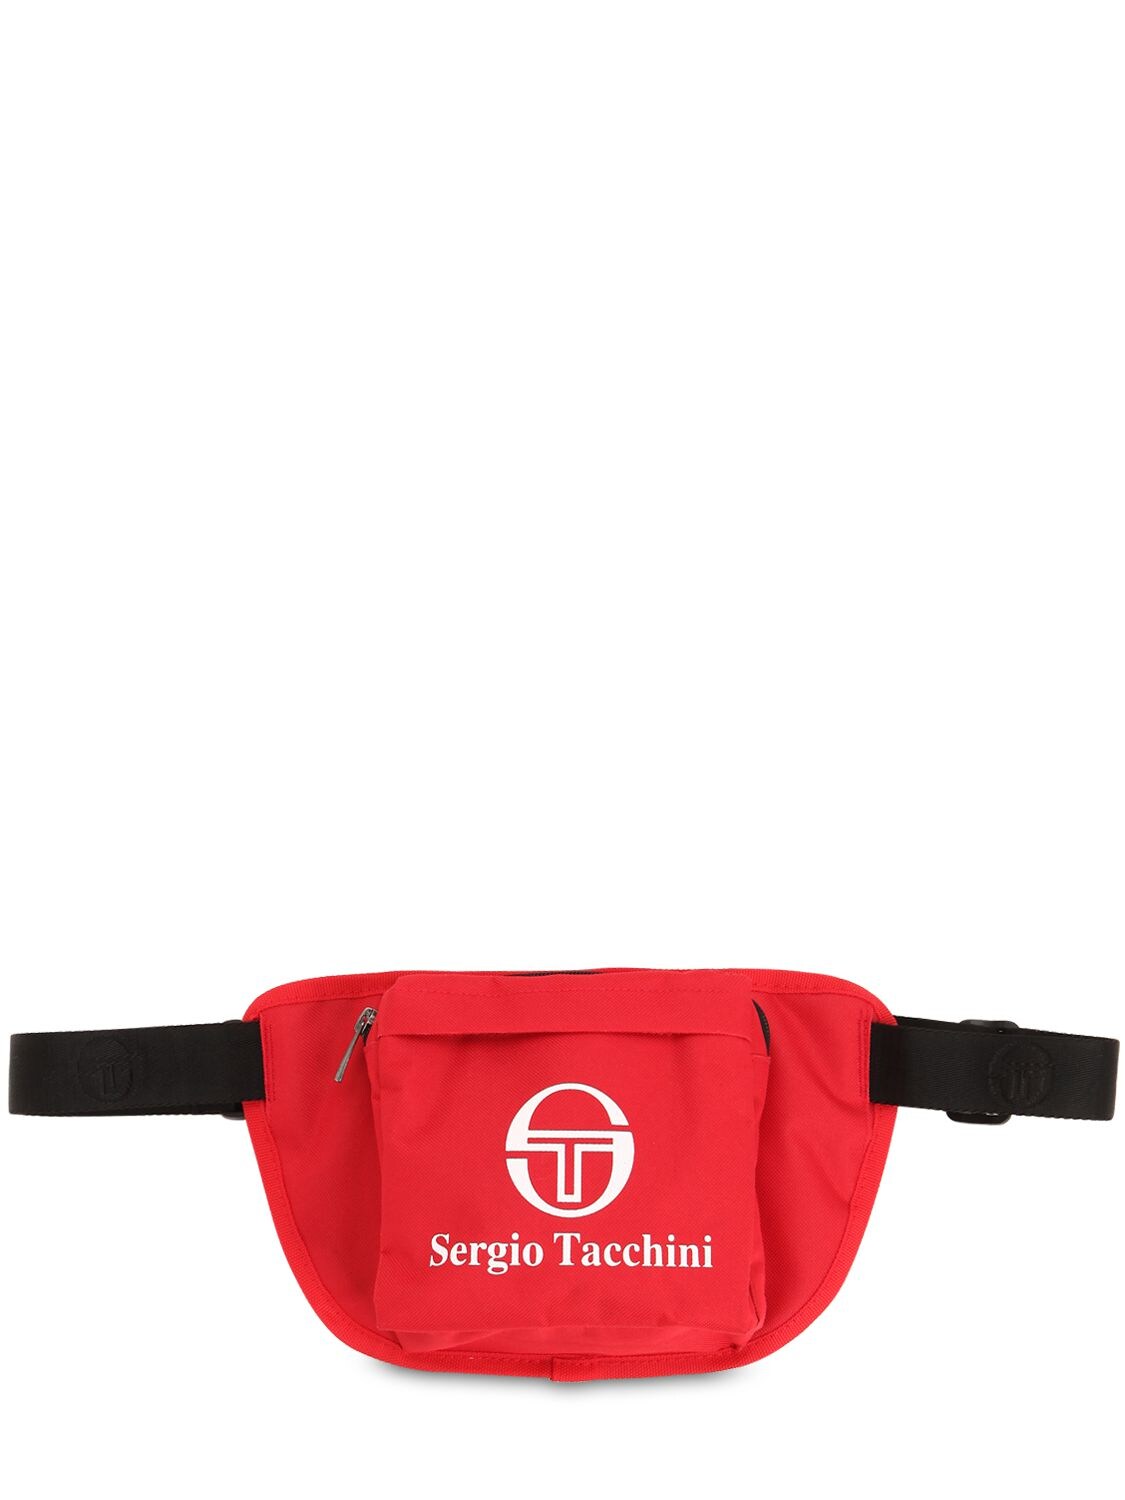 Sergio Tacchini Izzo Techno Belt Bag In Red